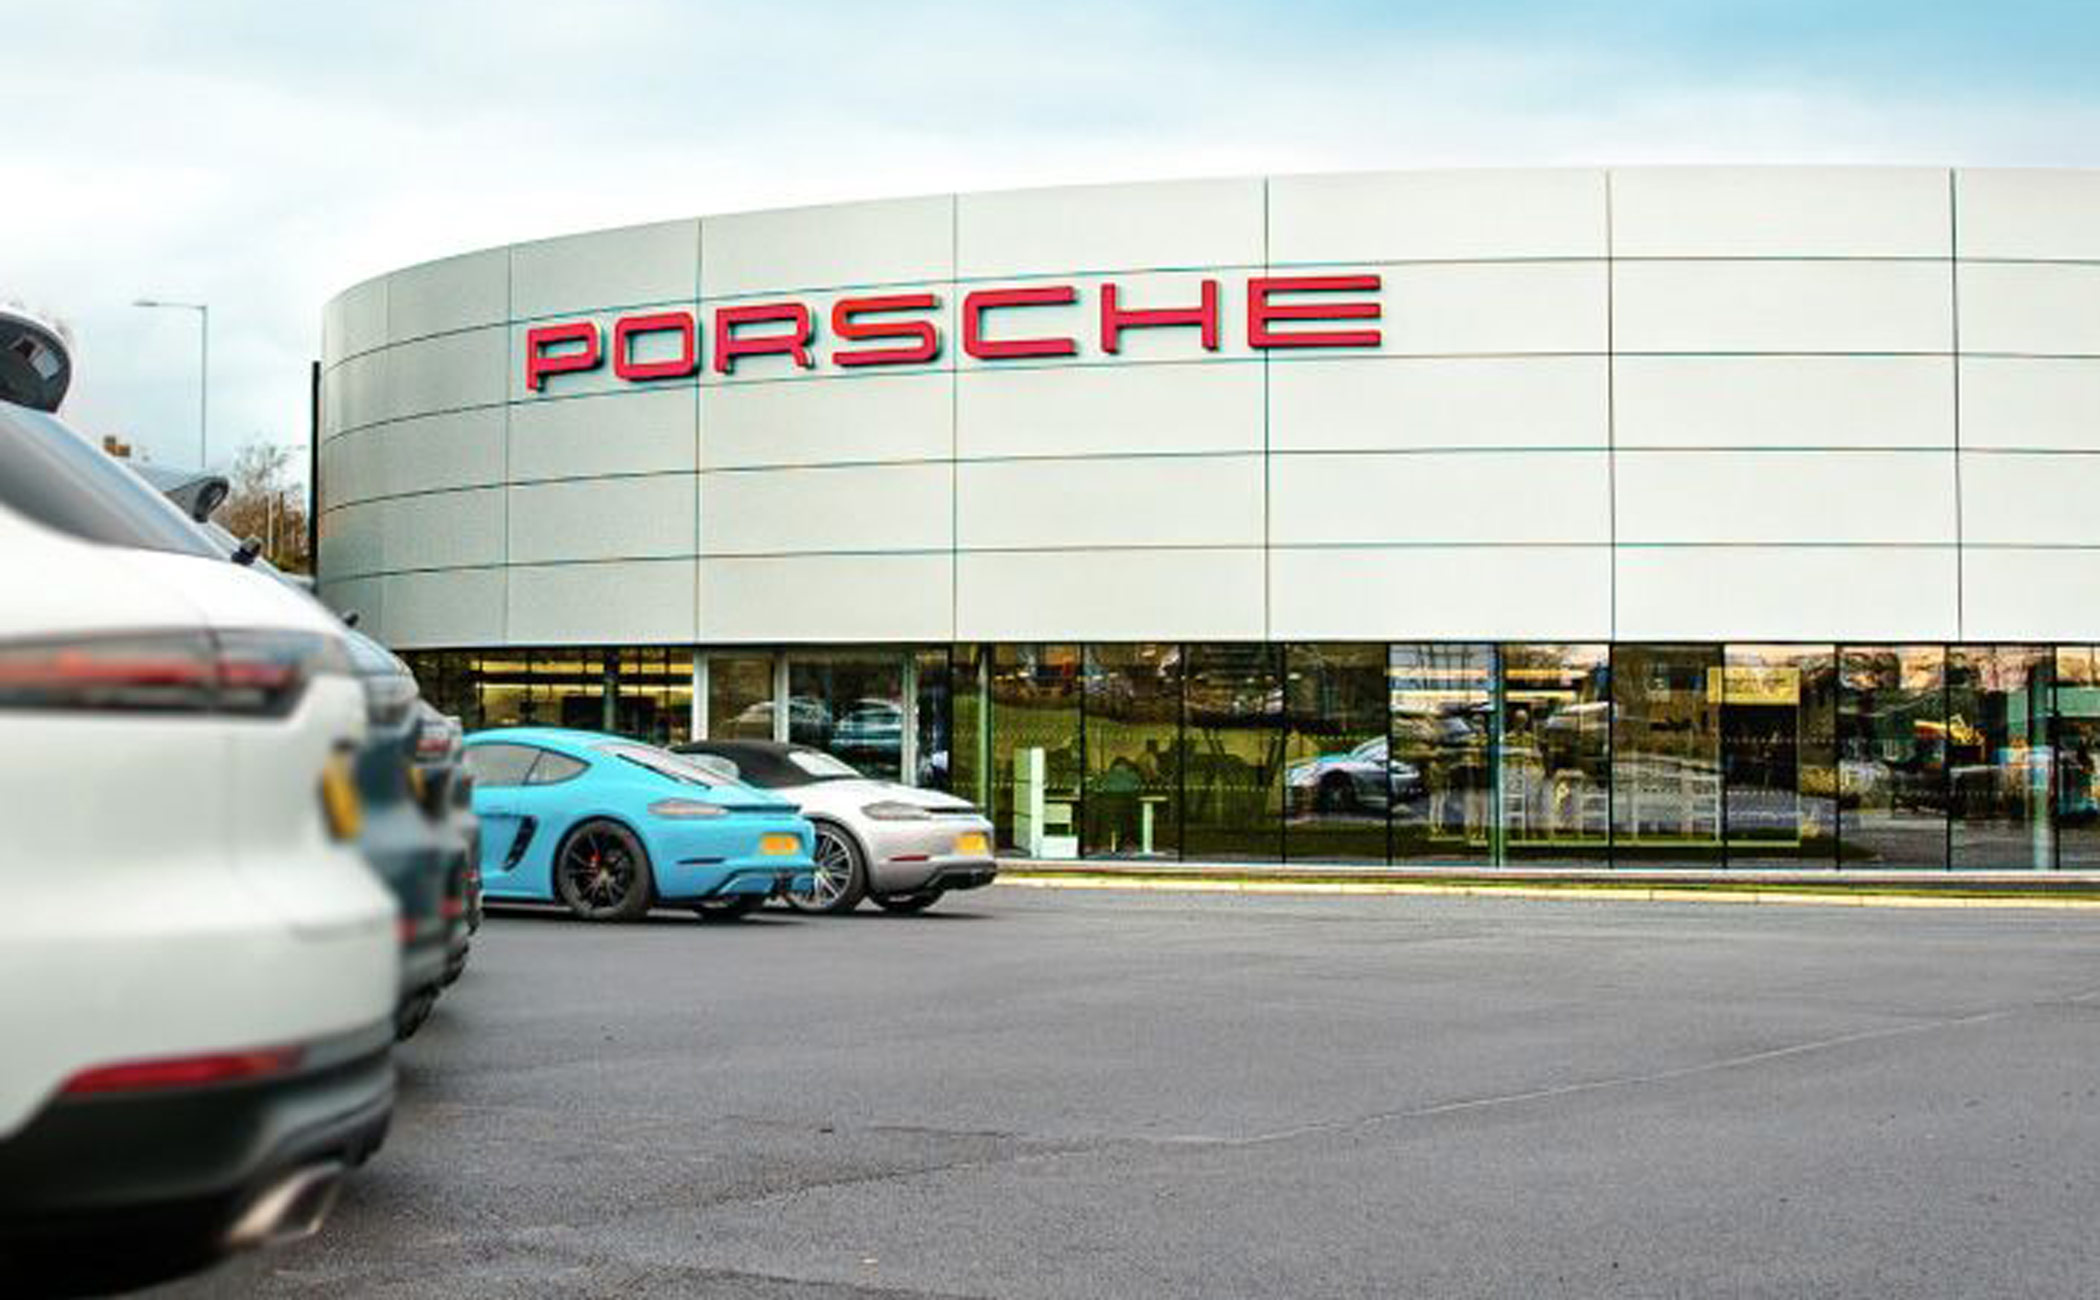 Porsche building in Norwich